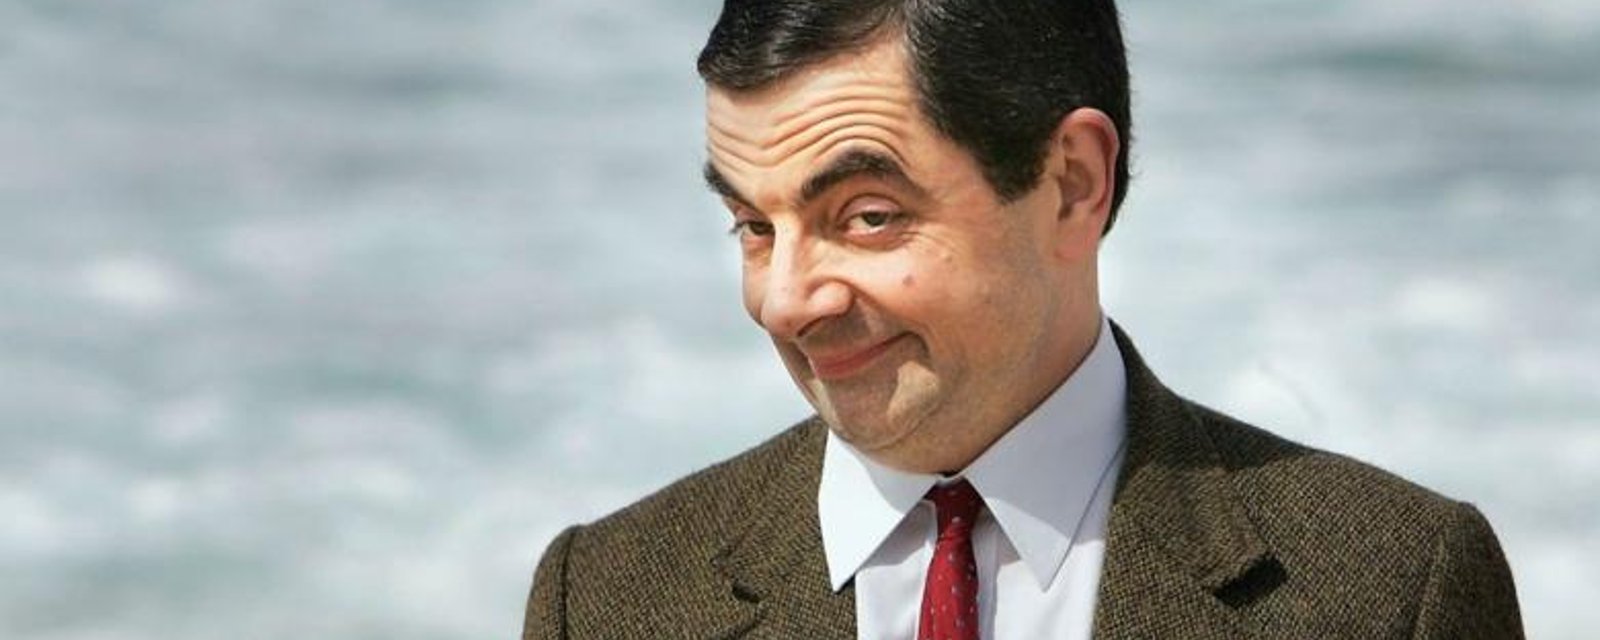 Mr. Bean est divorcé, voici sa nouvelle blonde 32 ans plus jeune que lui!